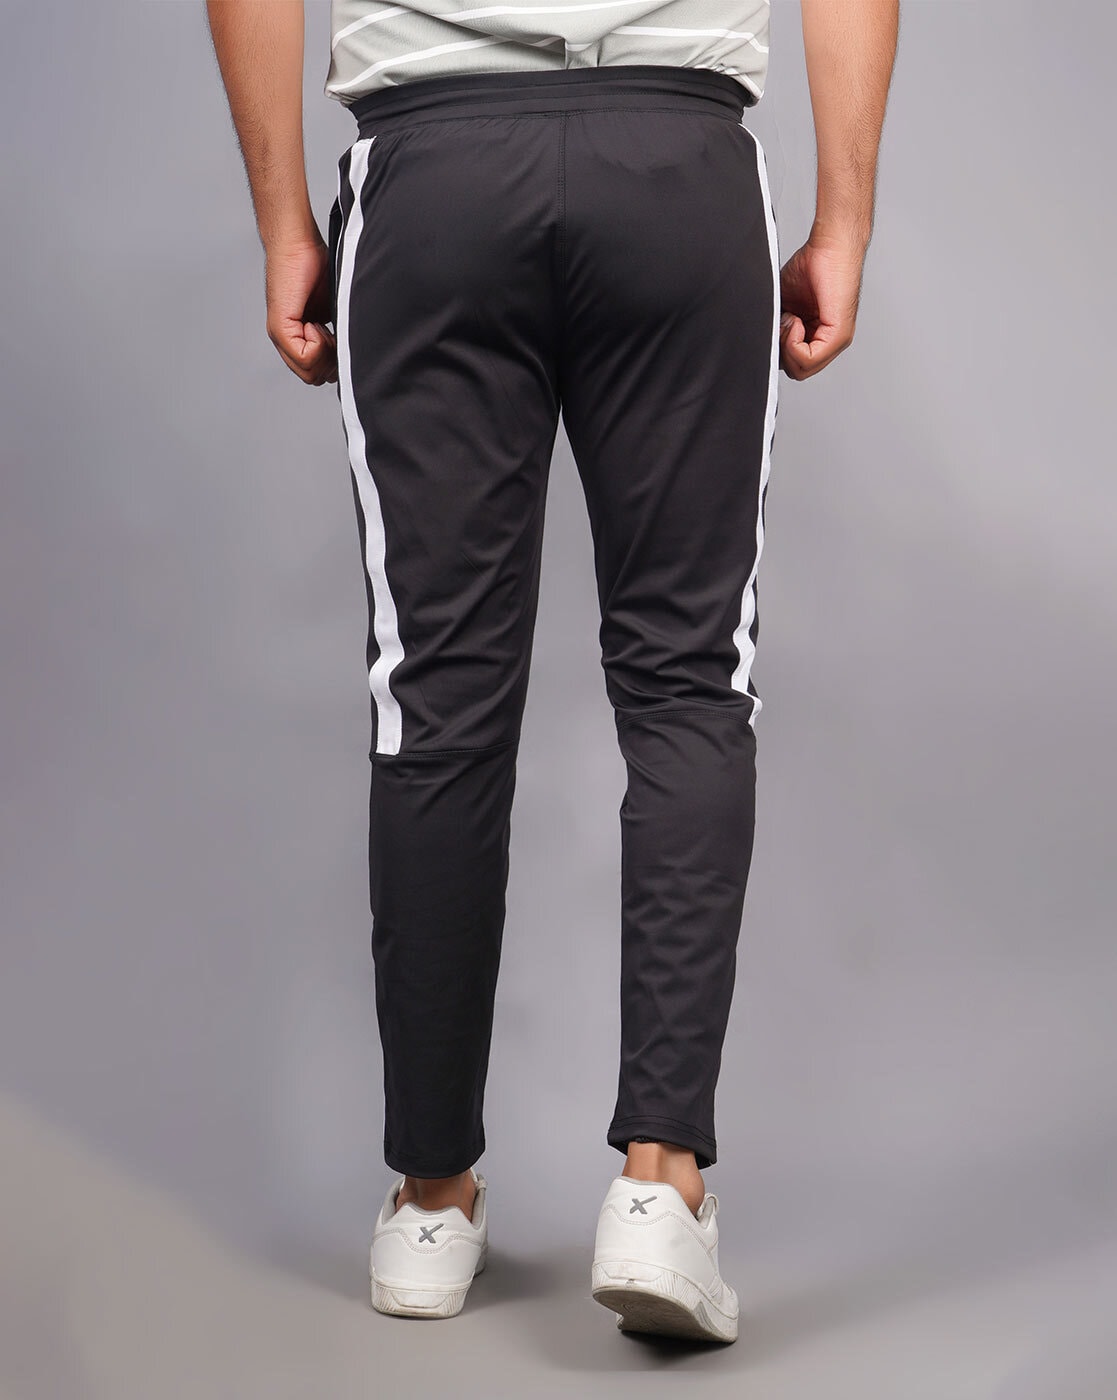 Pantalon Termico JOLUVI PERFORMANCE PANT Negro